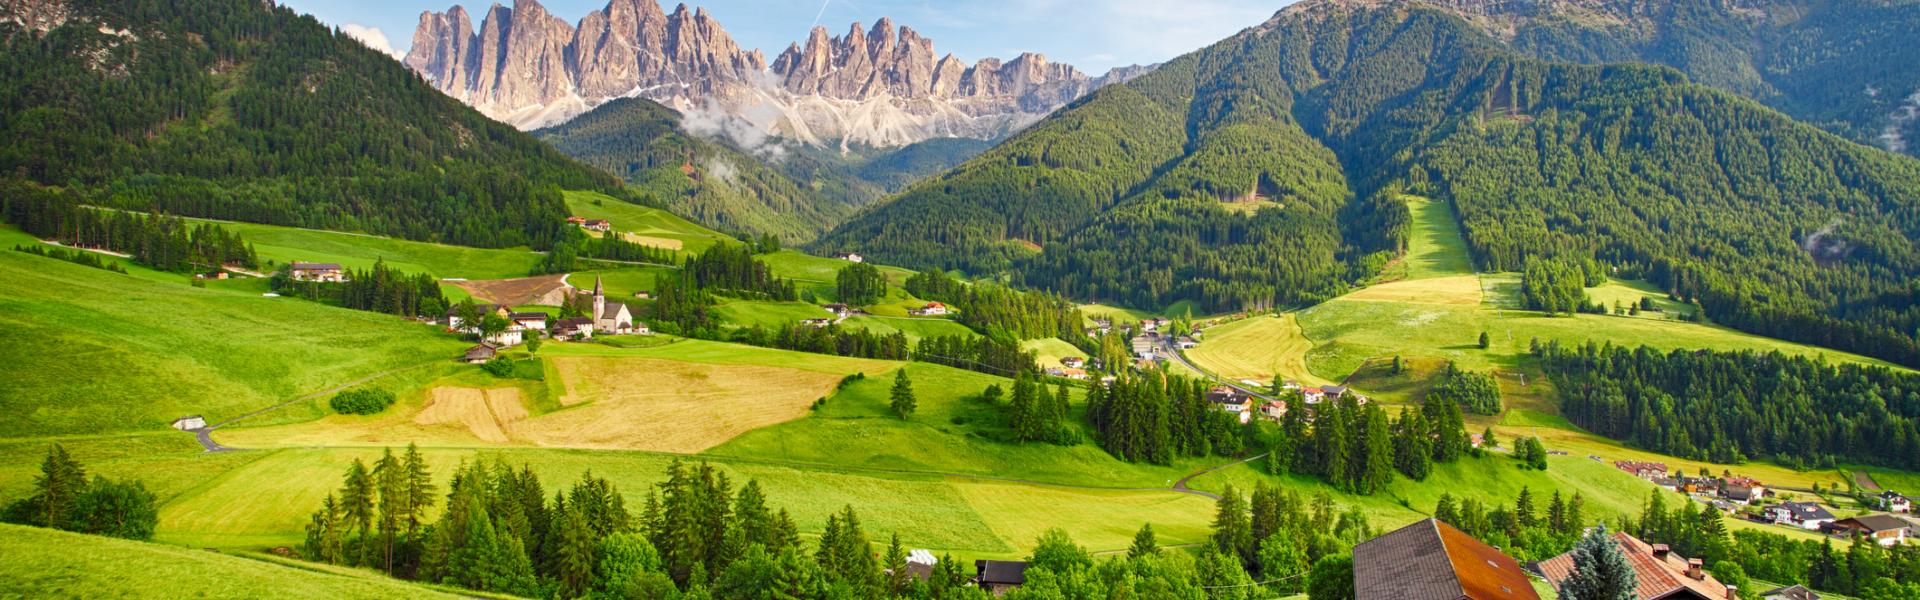 Case Vacanze e Appartamenti in Trentino Alto Adige in affitto - CaseVacanza.it